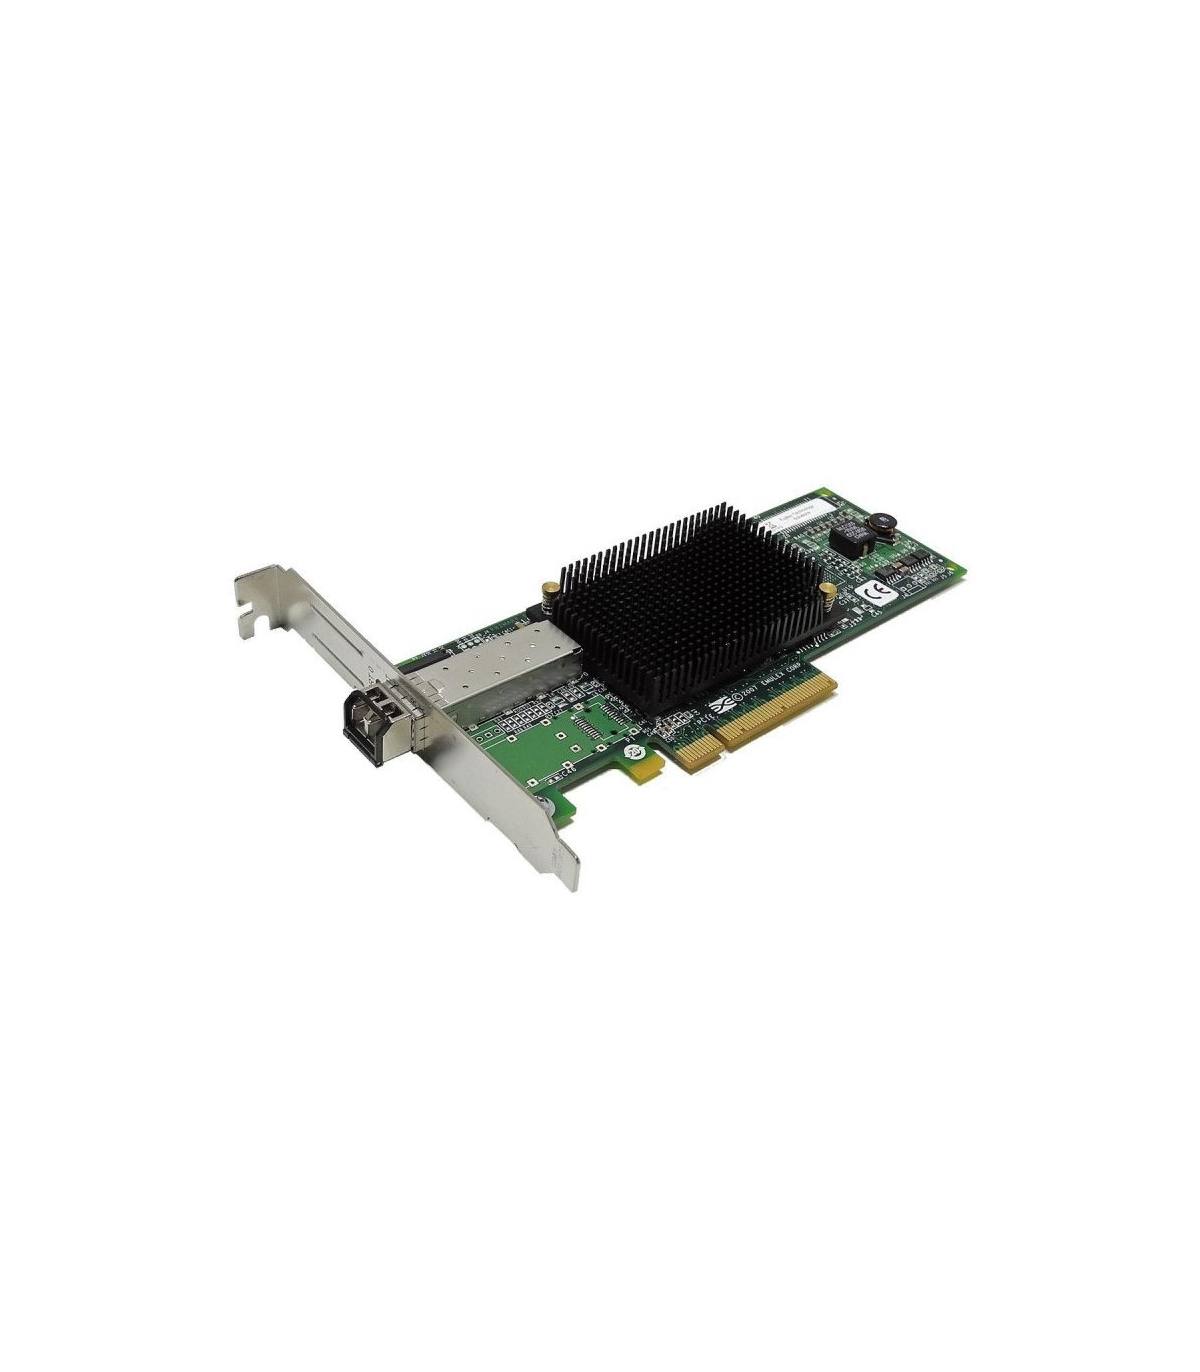 KARTA 8GB FC EMULEX LPE1250-E 8GB HBA PCIE P002181-04B HIGH